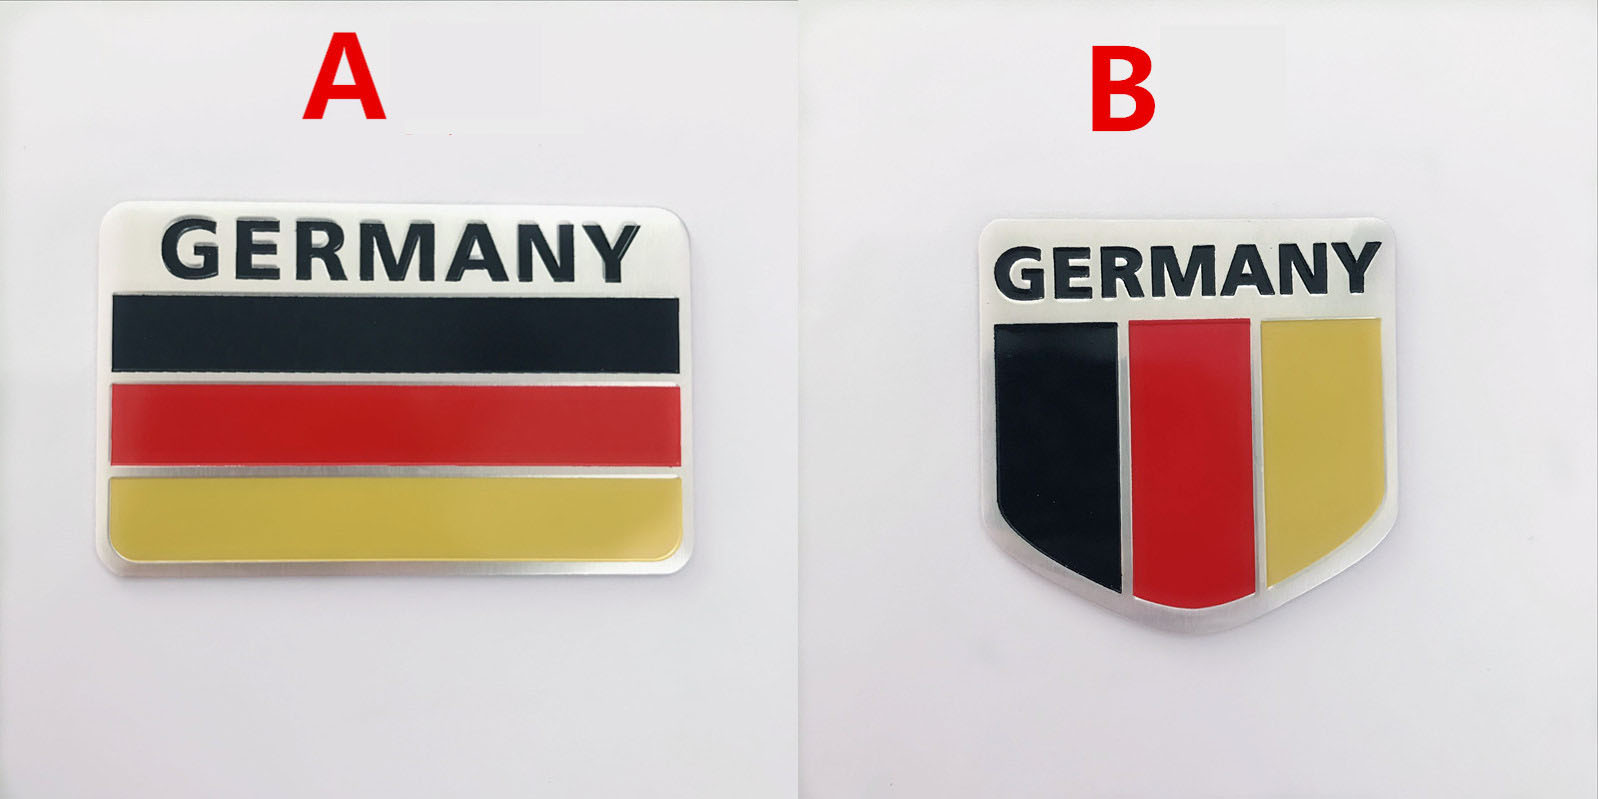 Logo kim loại cờ Đức dán xe ô tô